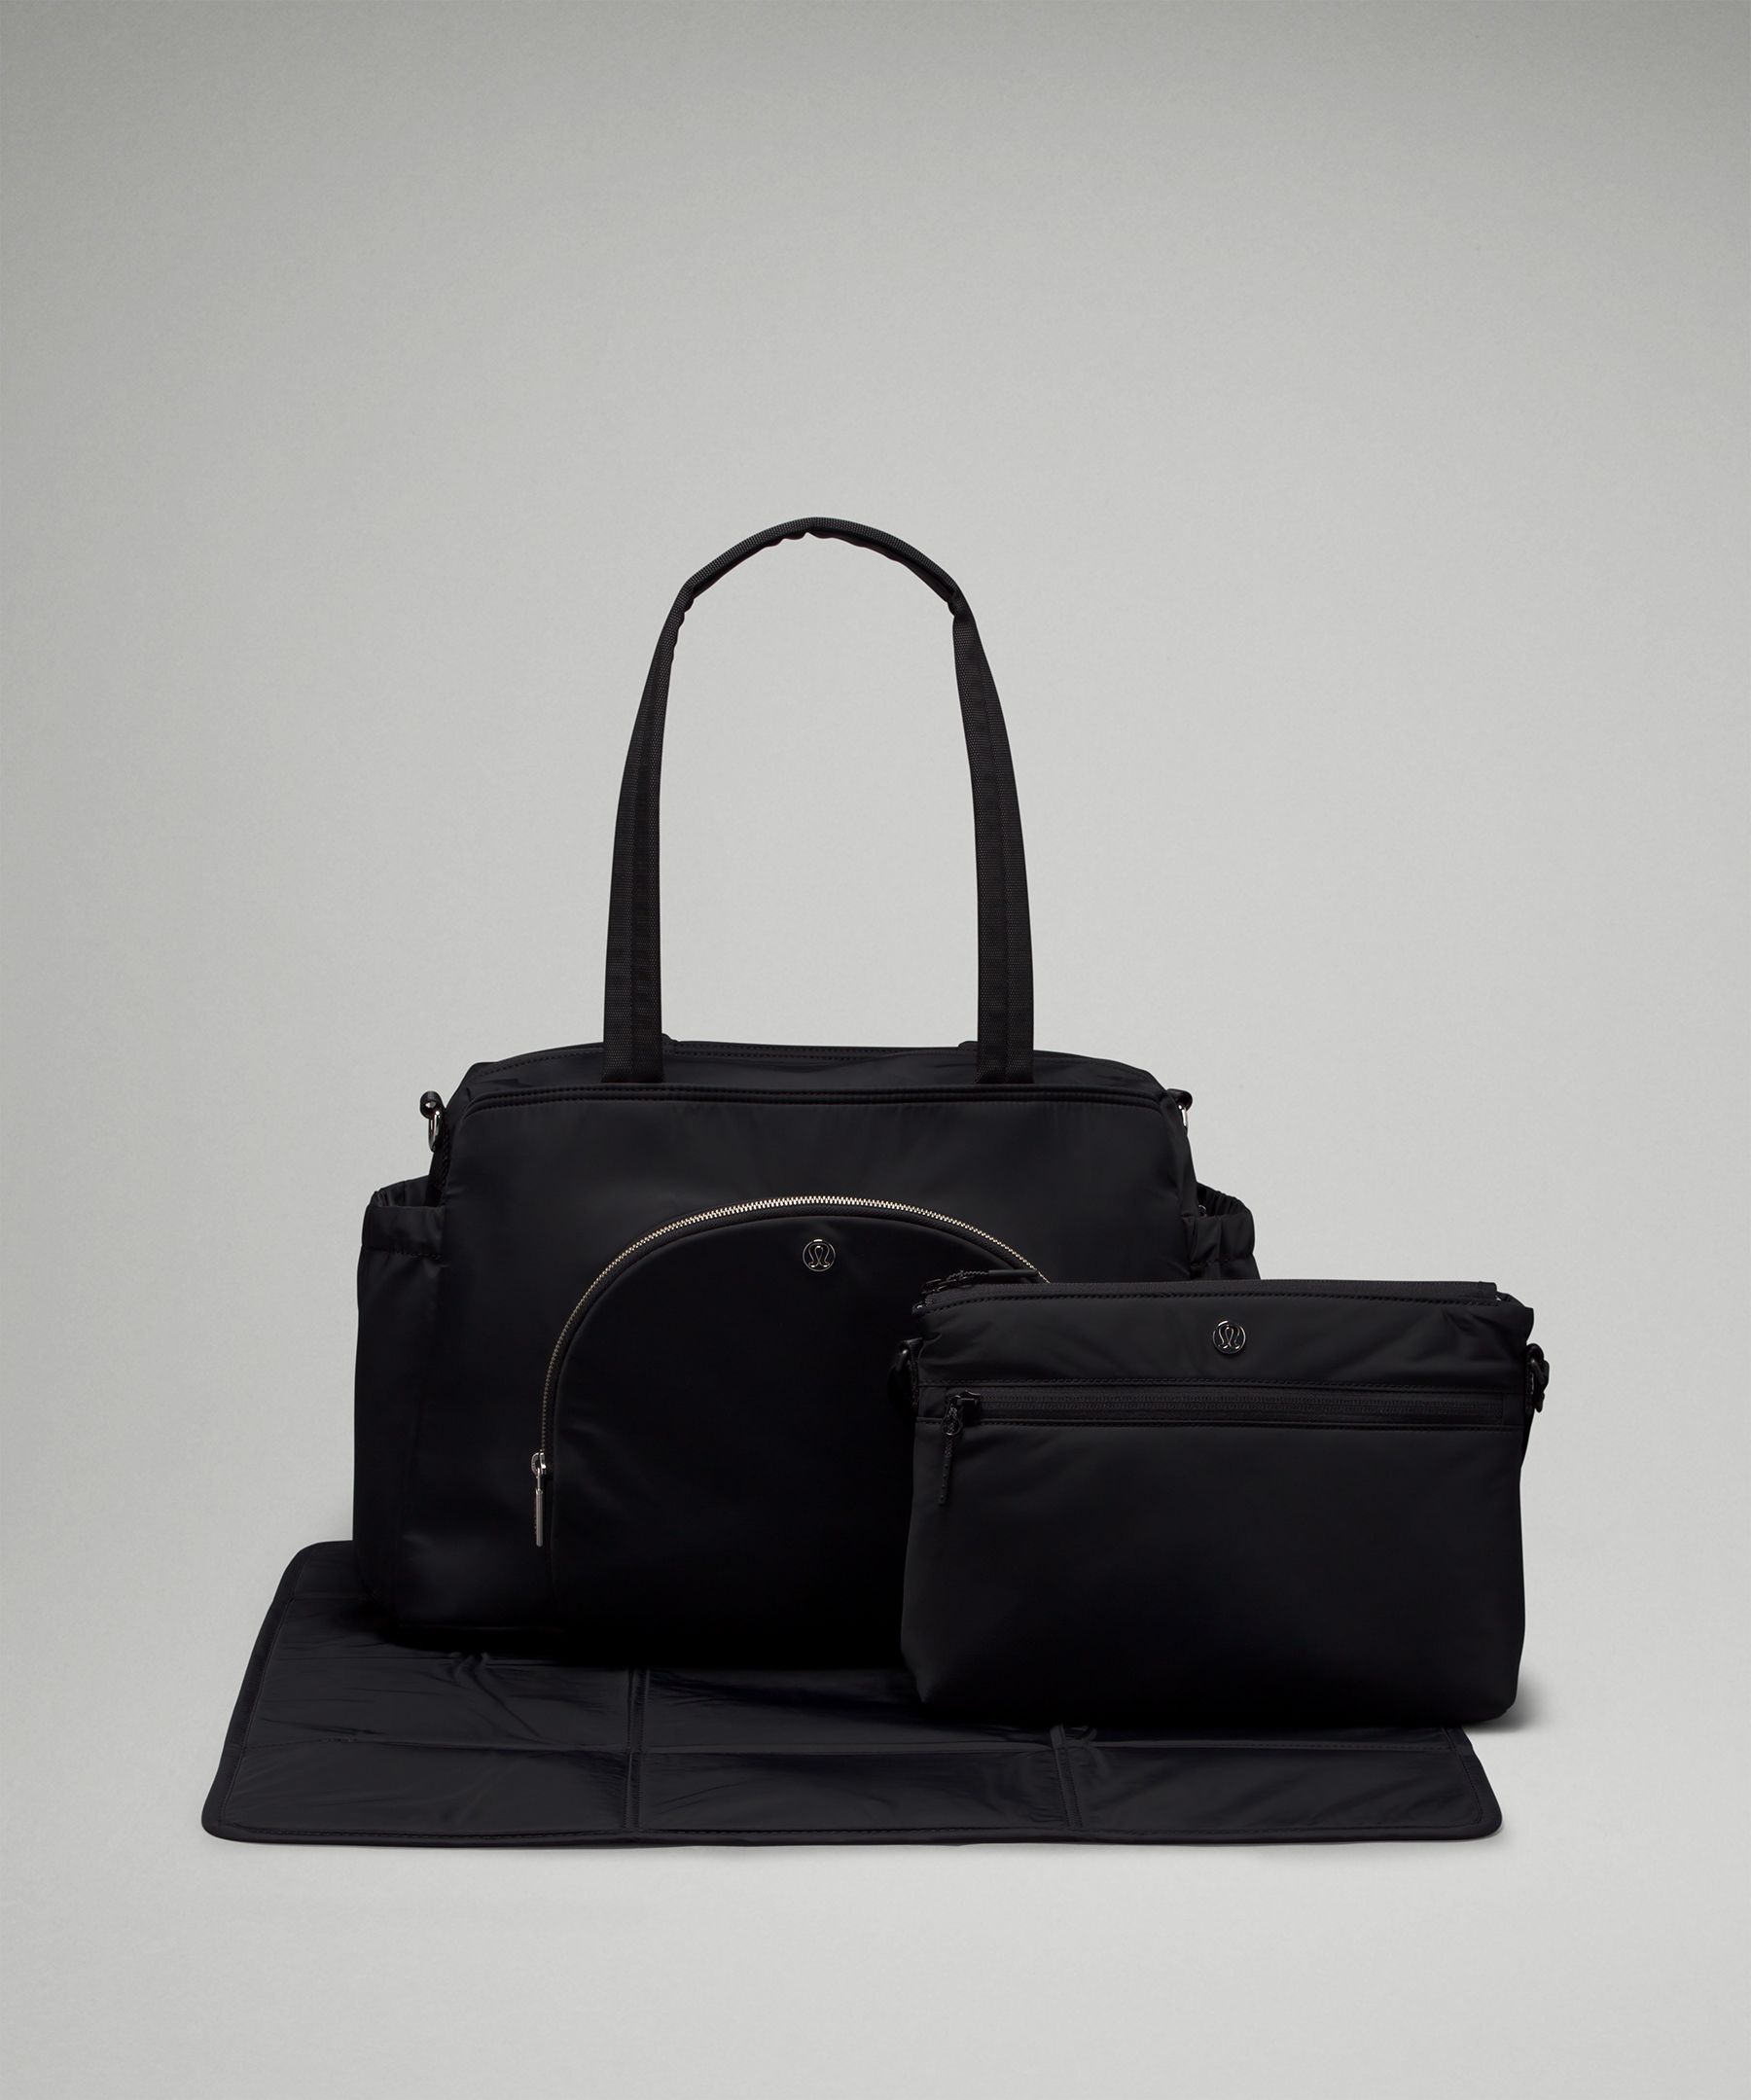 Lululemon Black All Over Reusable Small Tote Bag